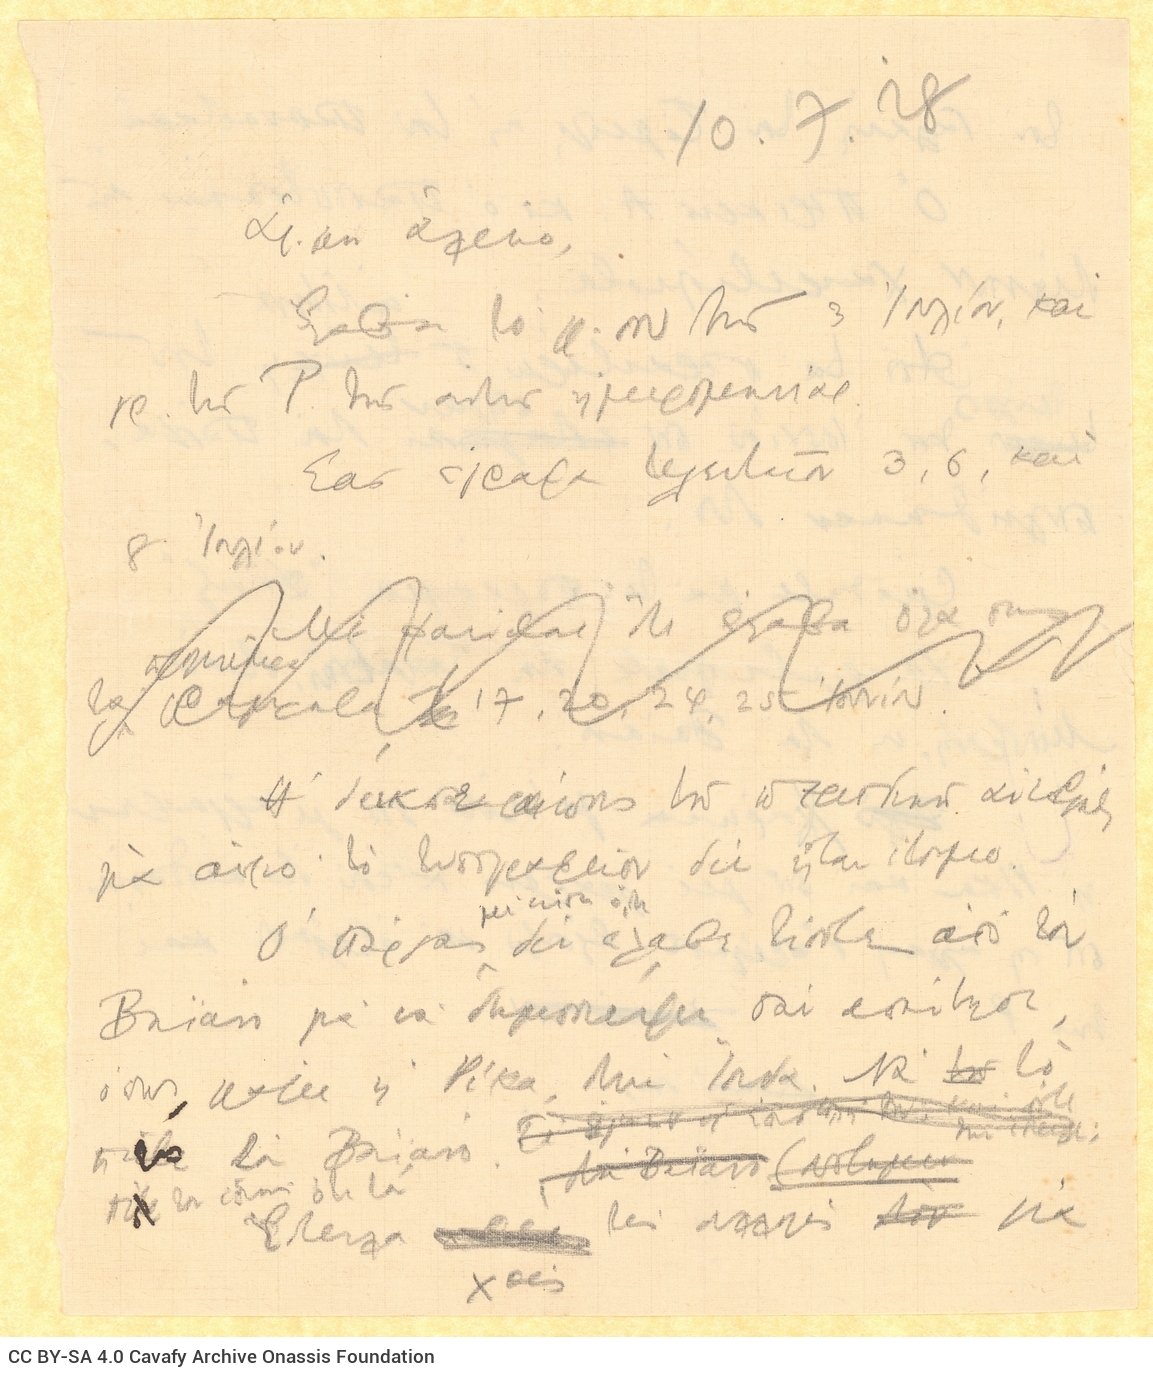 Χειρόγραφο σχέδιο επιστολής προς τον Αλέκο [Σεγκόπουλο] στις δύο όψε